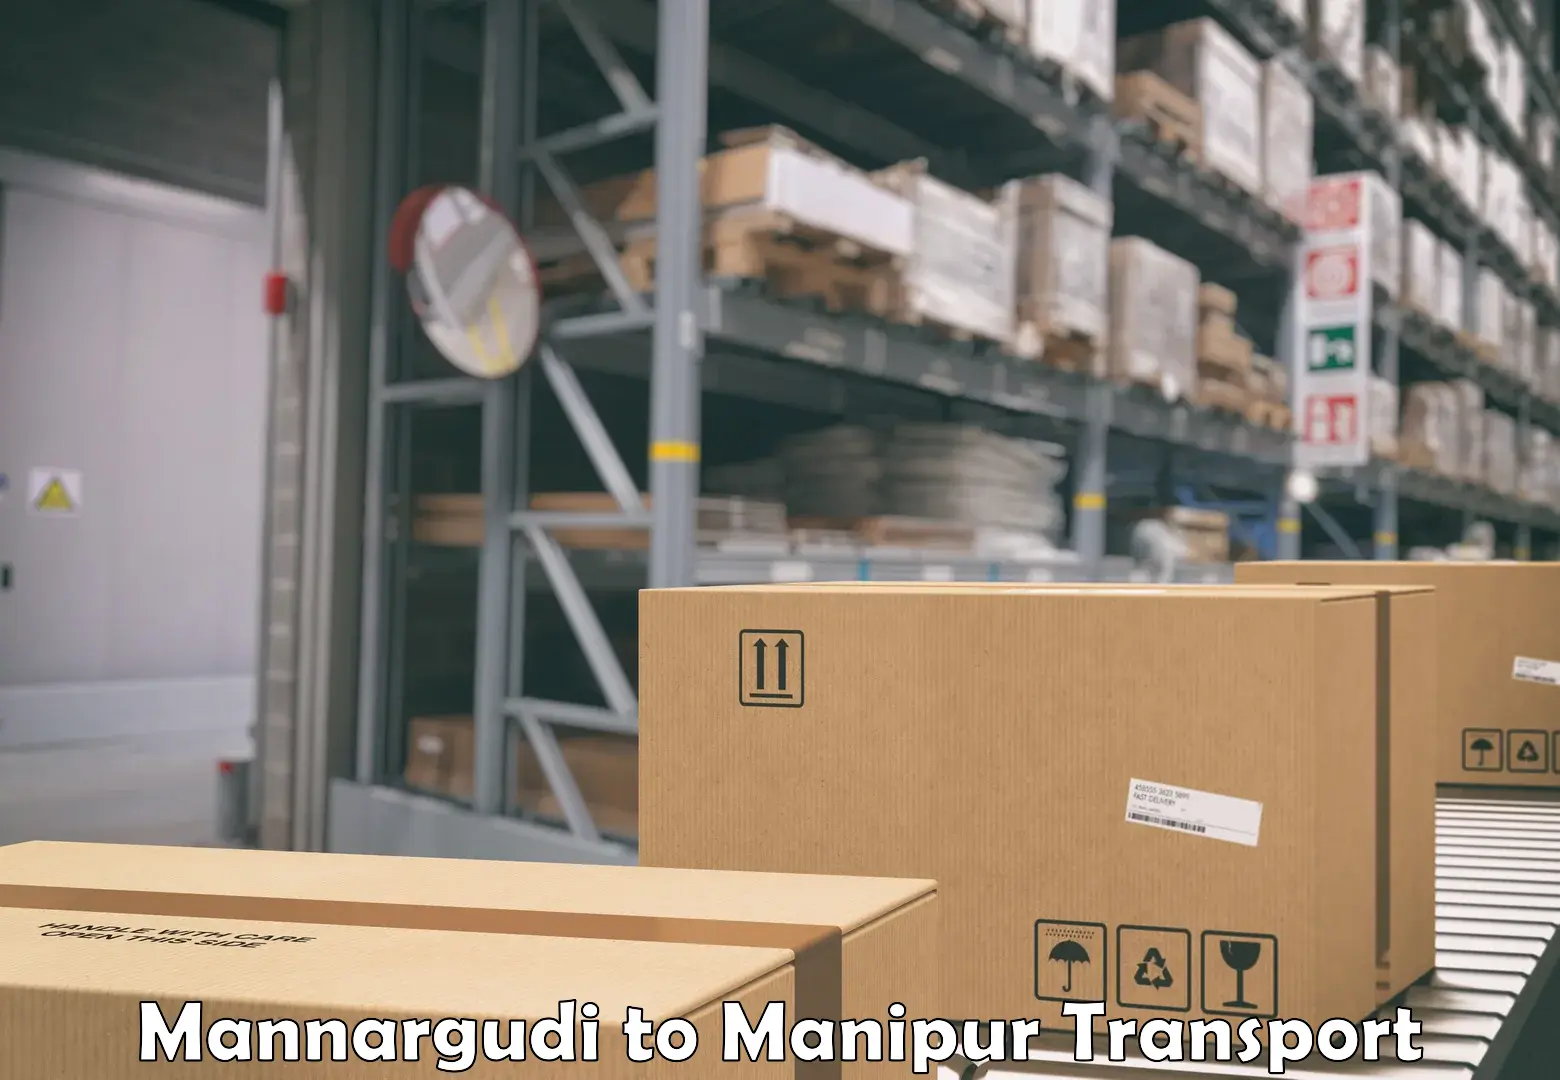 Bike shipping service Mannargudi to Churachandpur